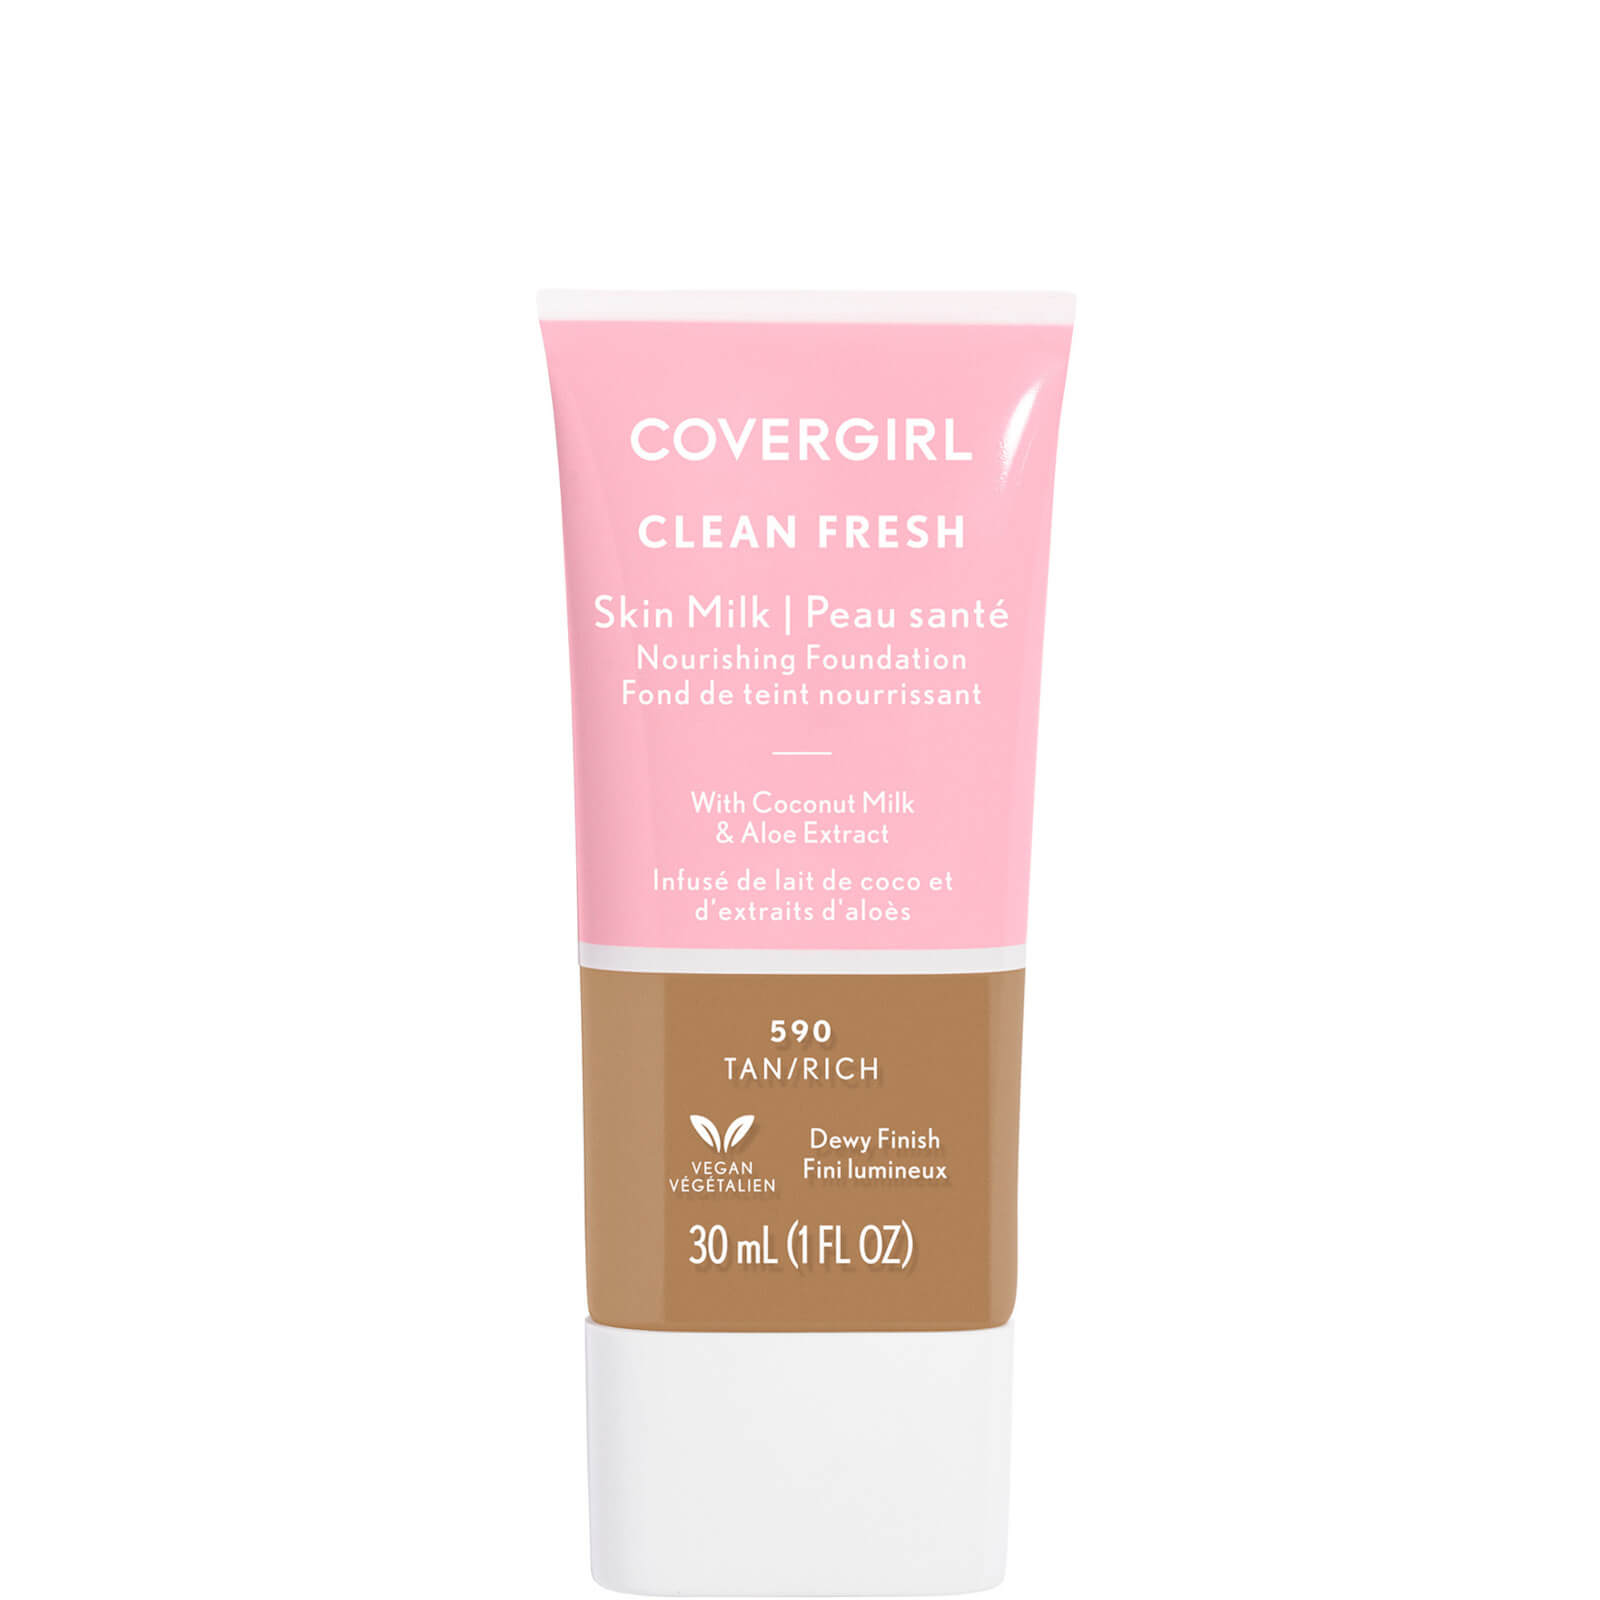 Covergirl Clean Fresh Skin Milk Foundation 1oz (Various Shades) - Tan/Rich